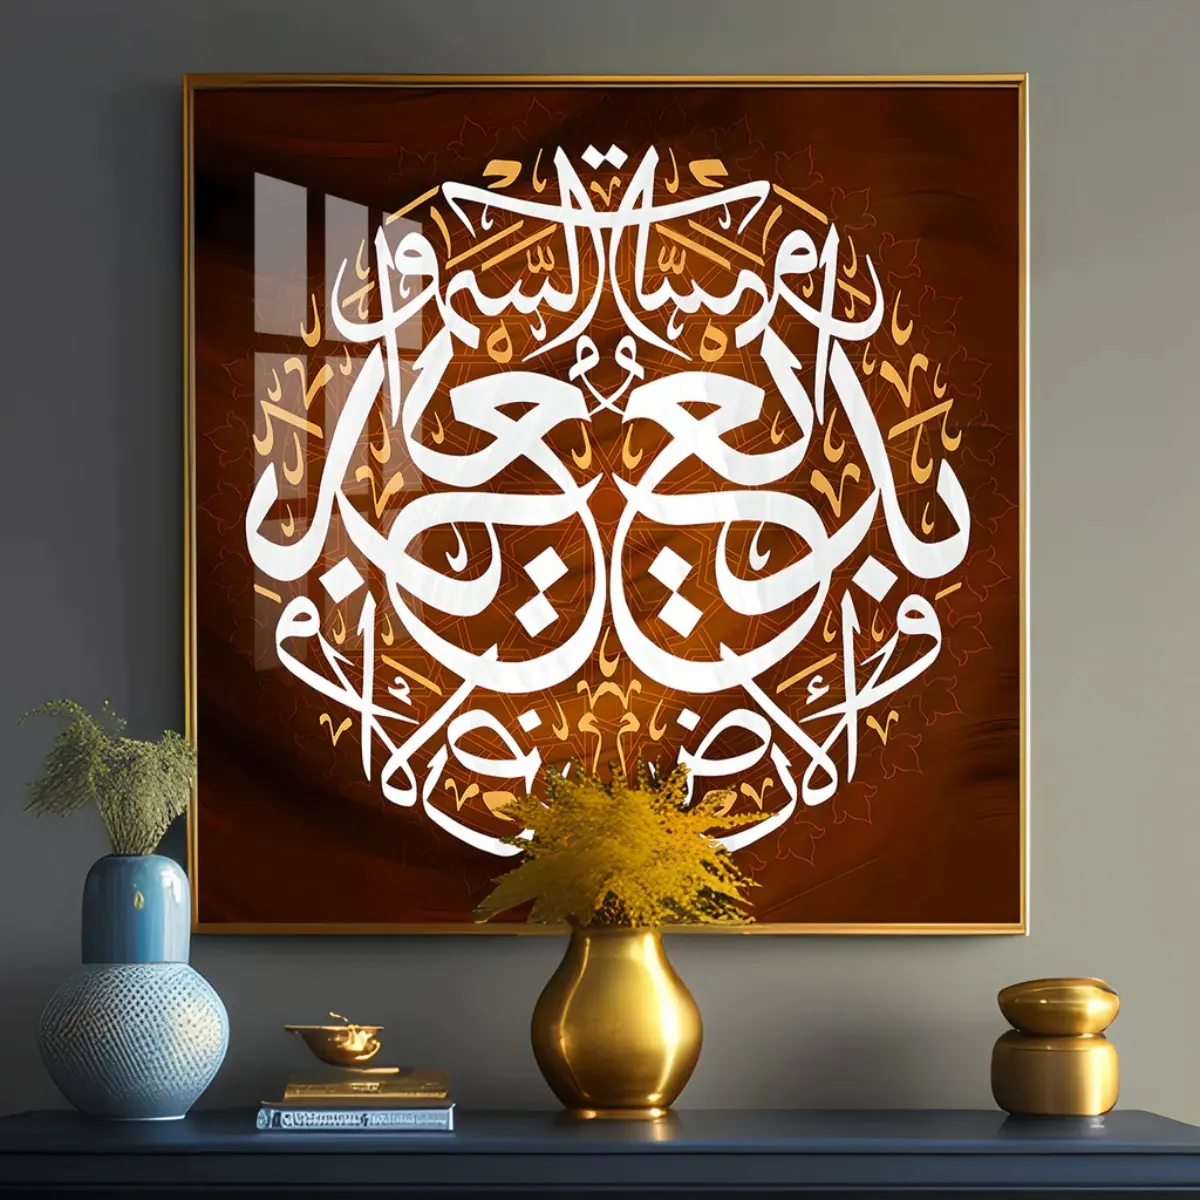 رسومات جدارية إسلامية، رسم عربي إسلامي، برسم ديني، إطارات صور بورسلين كريستال، لوحة طباعة بورسلين كريستال